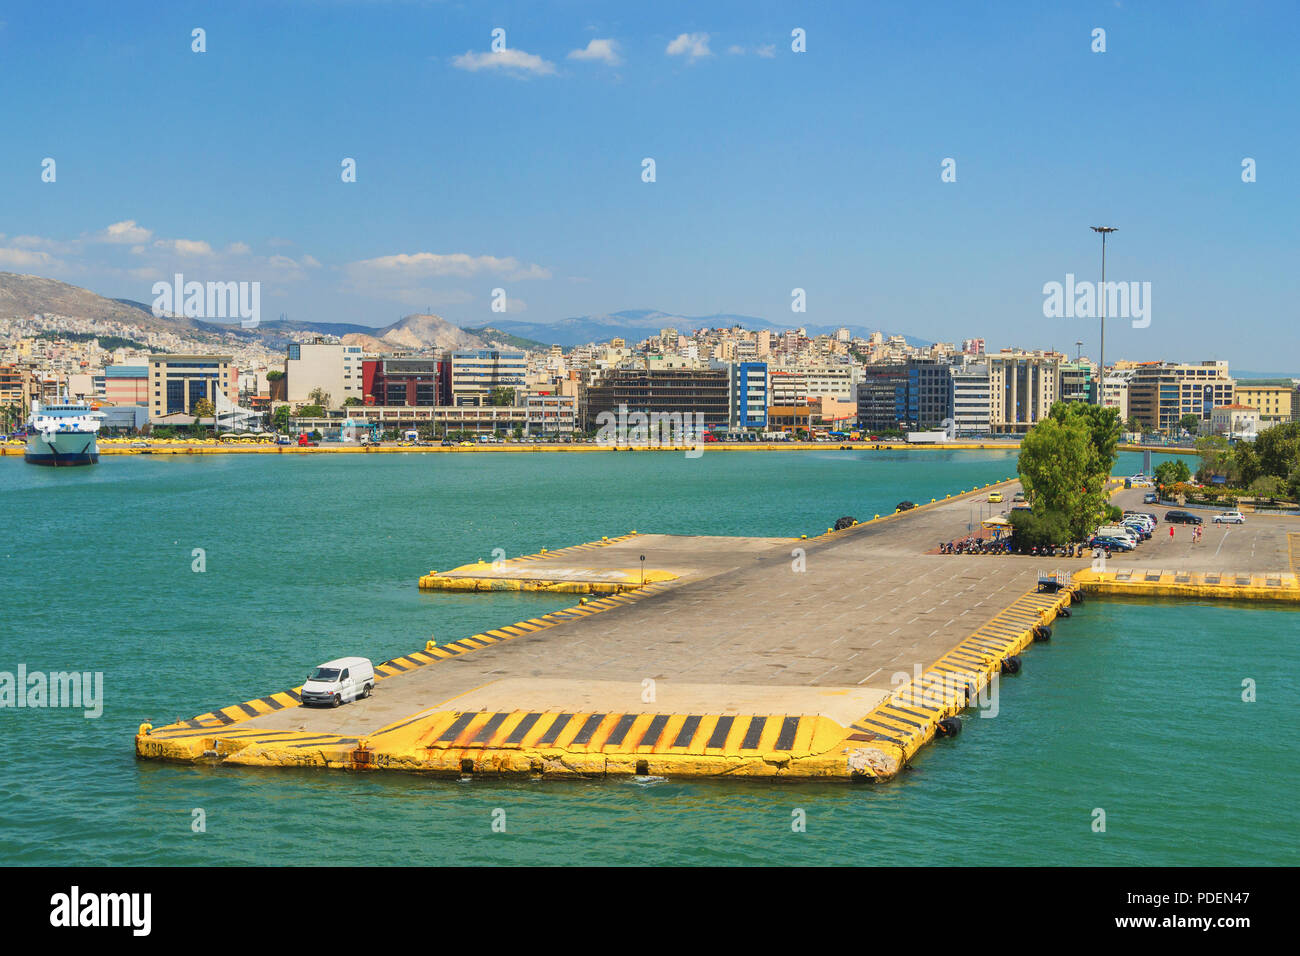 Port of Piraeus, Athens - Greece Stock Photo